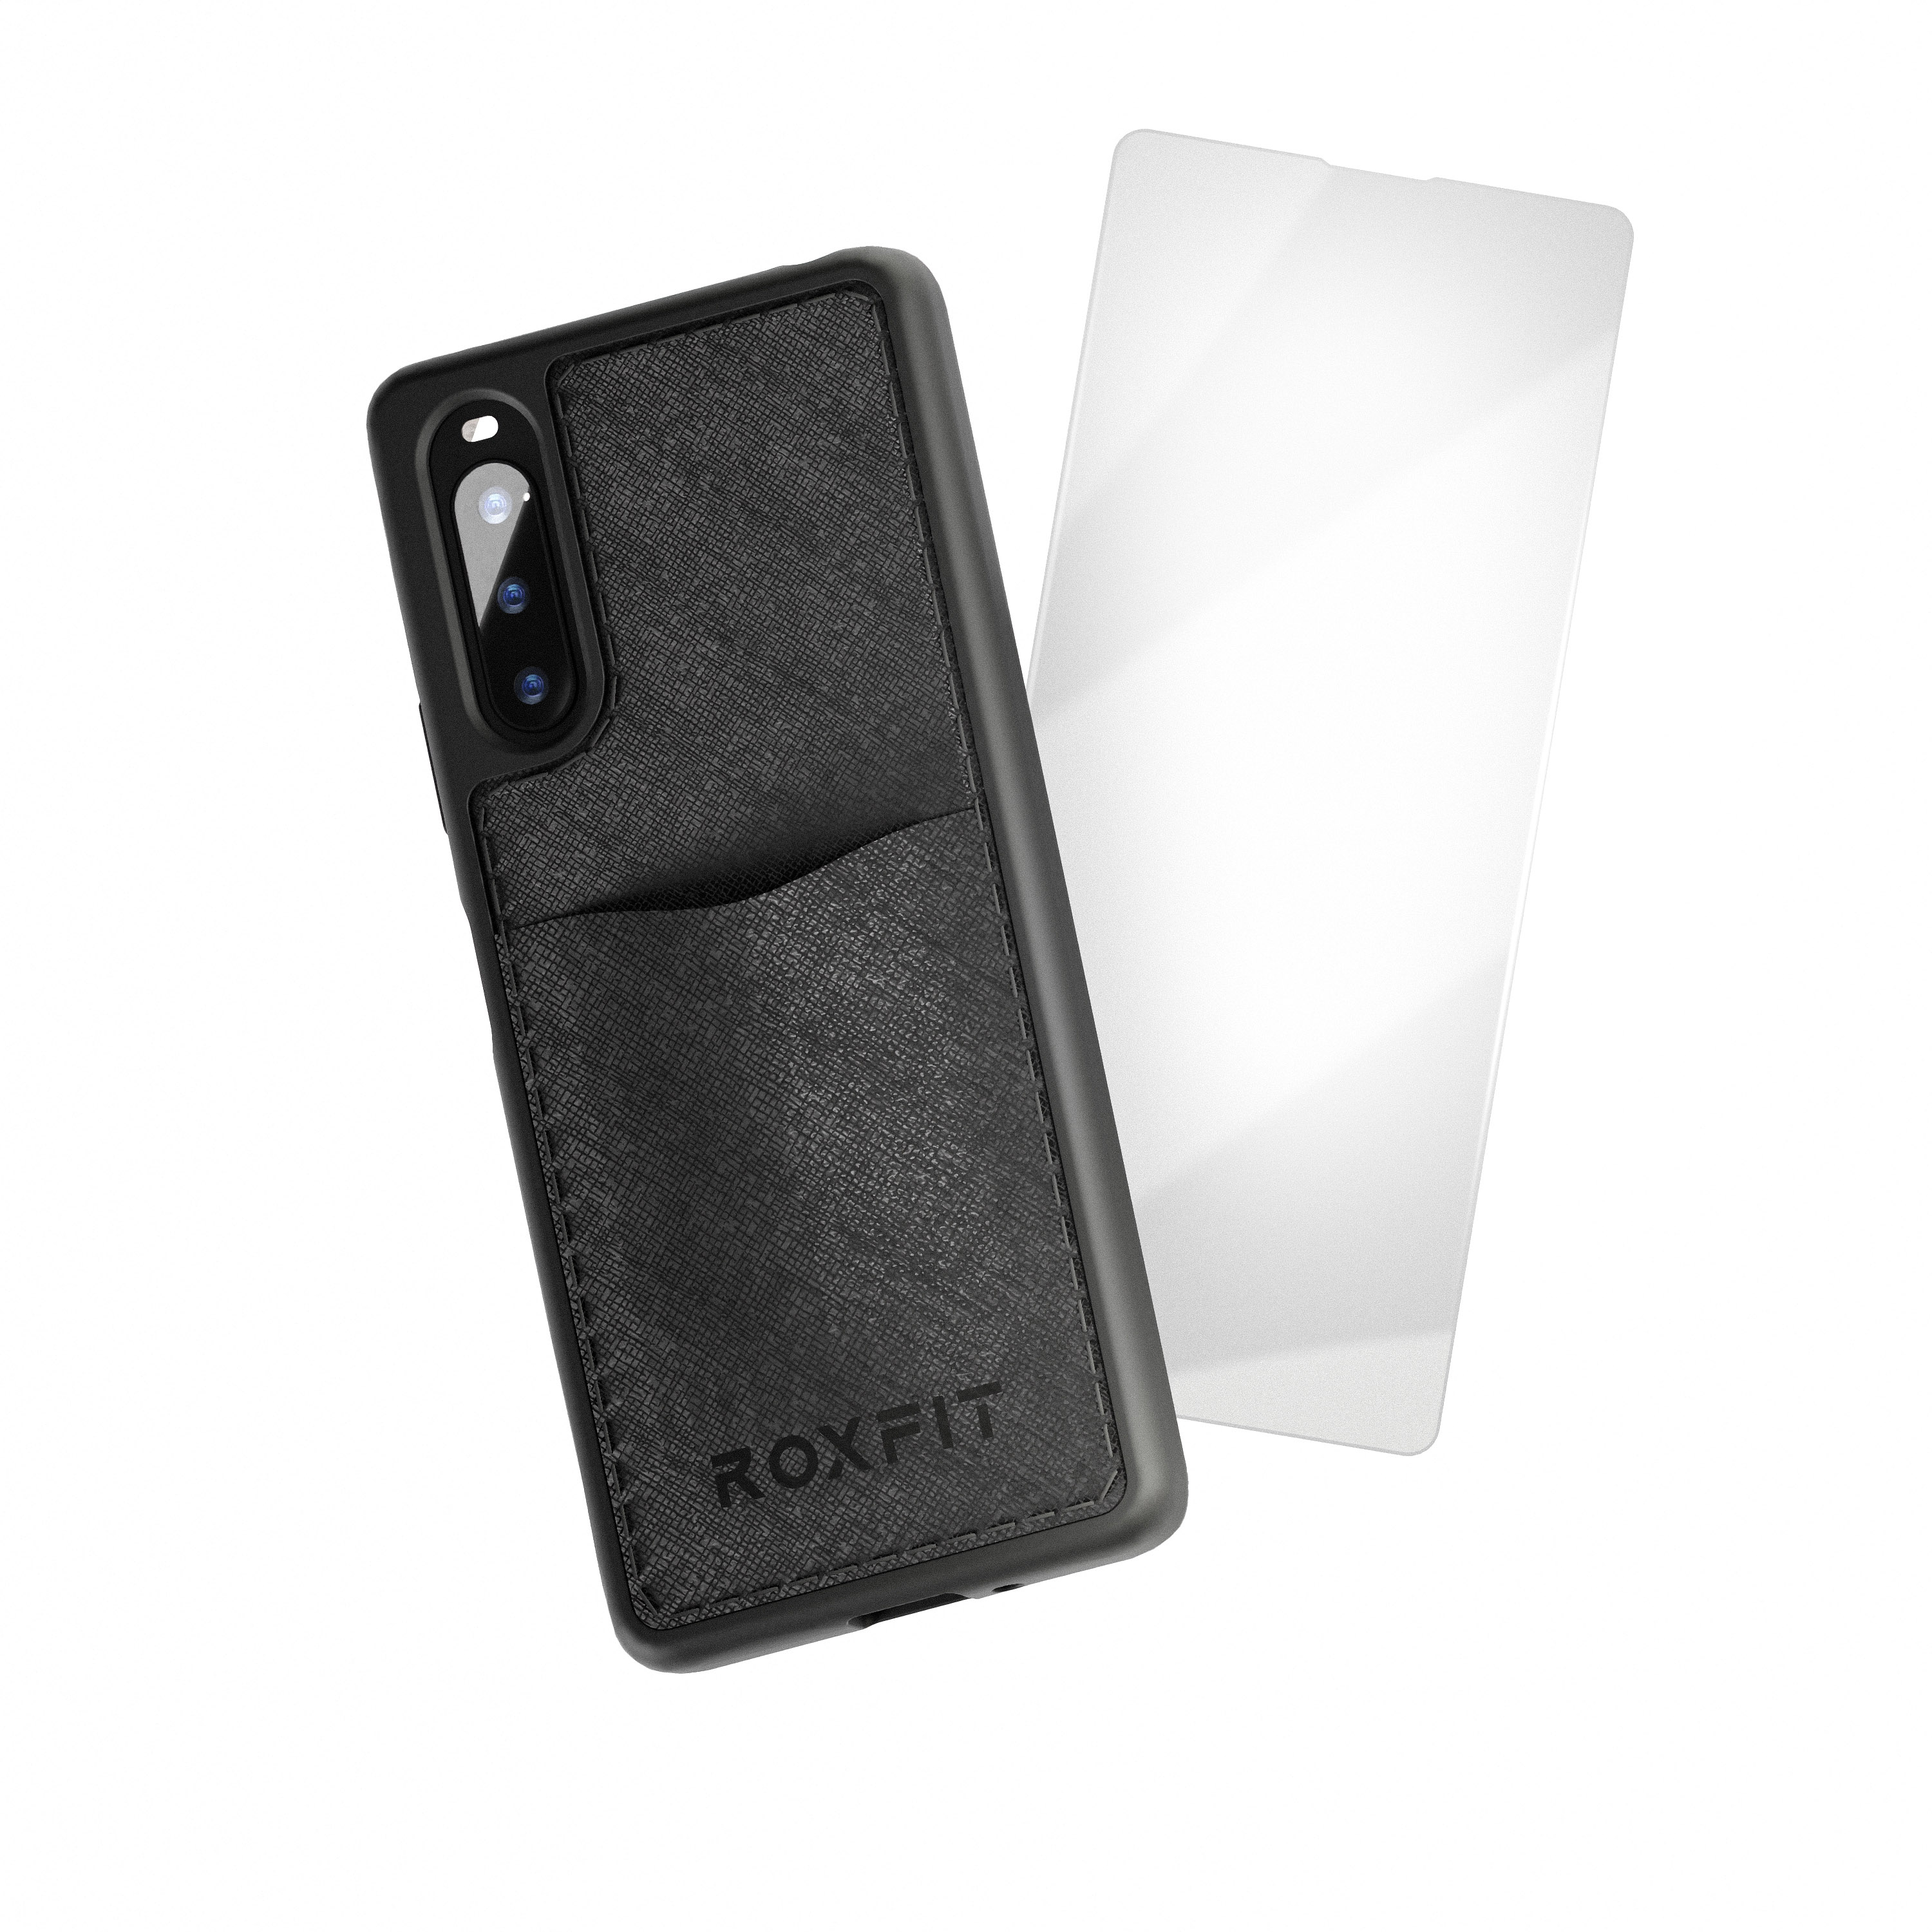 Roxfit Sony Xperia 10 IV 咭片收納手機保護殼連螢幕保護貼 (黑色色)